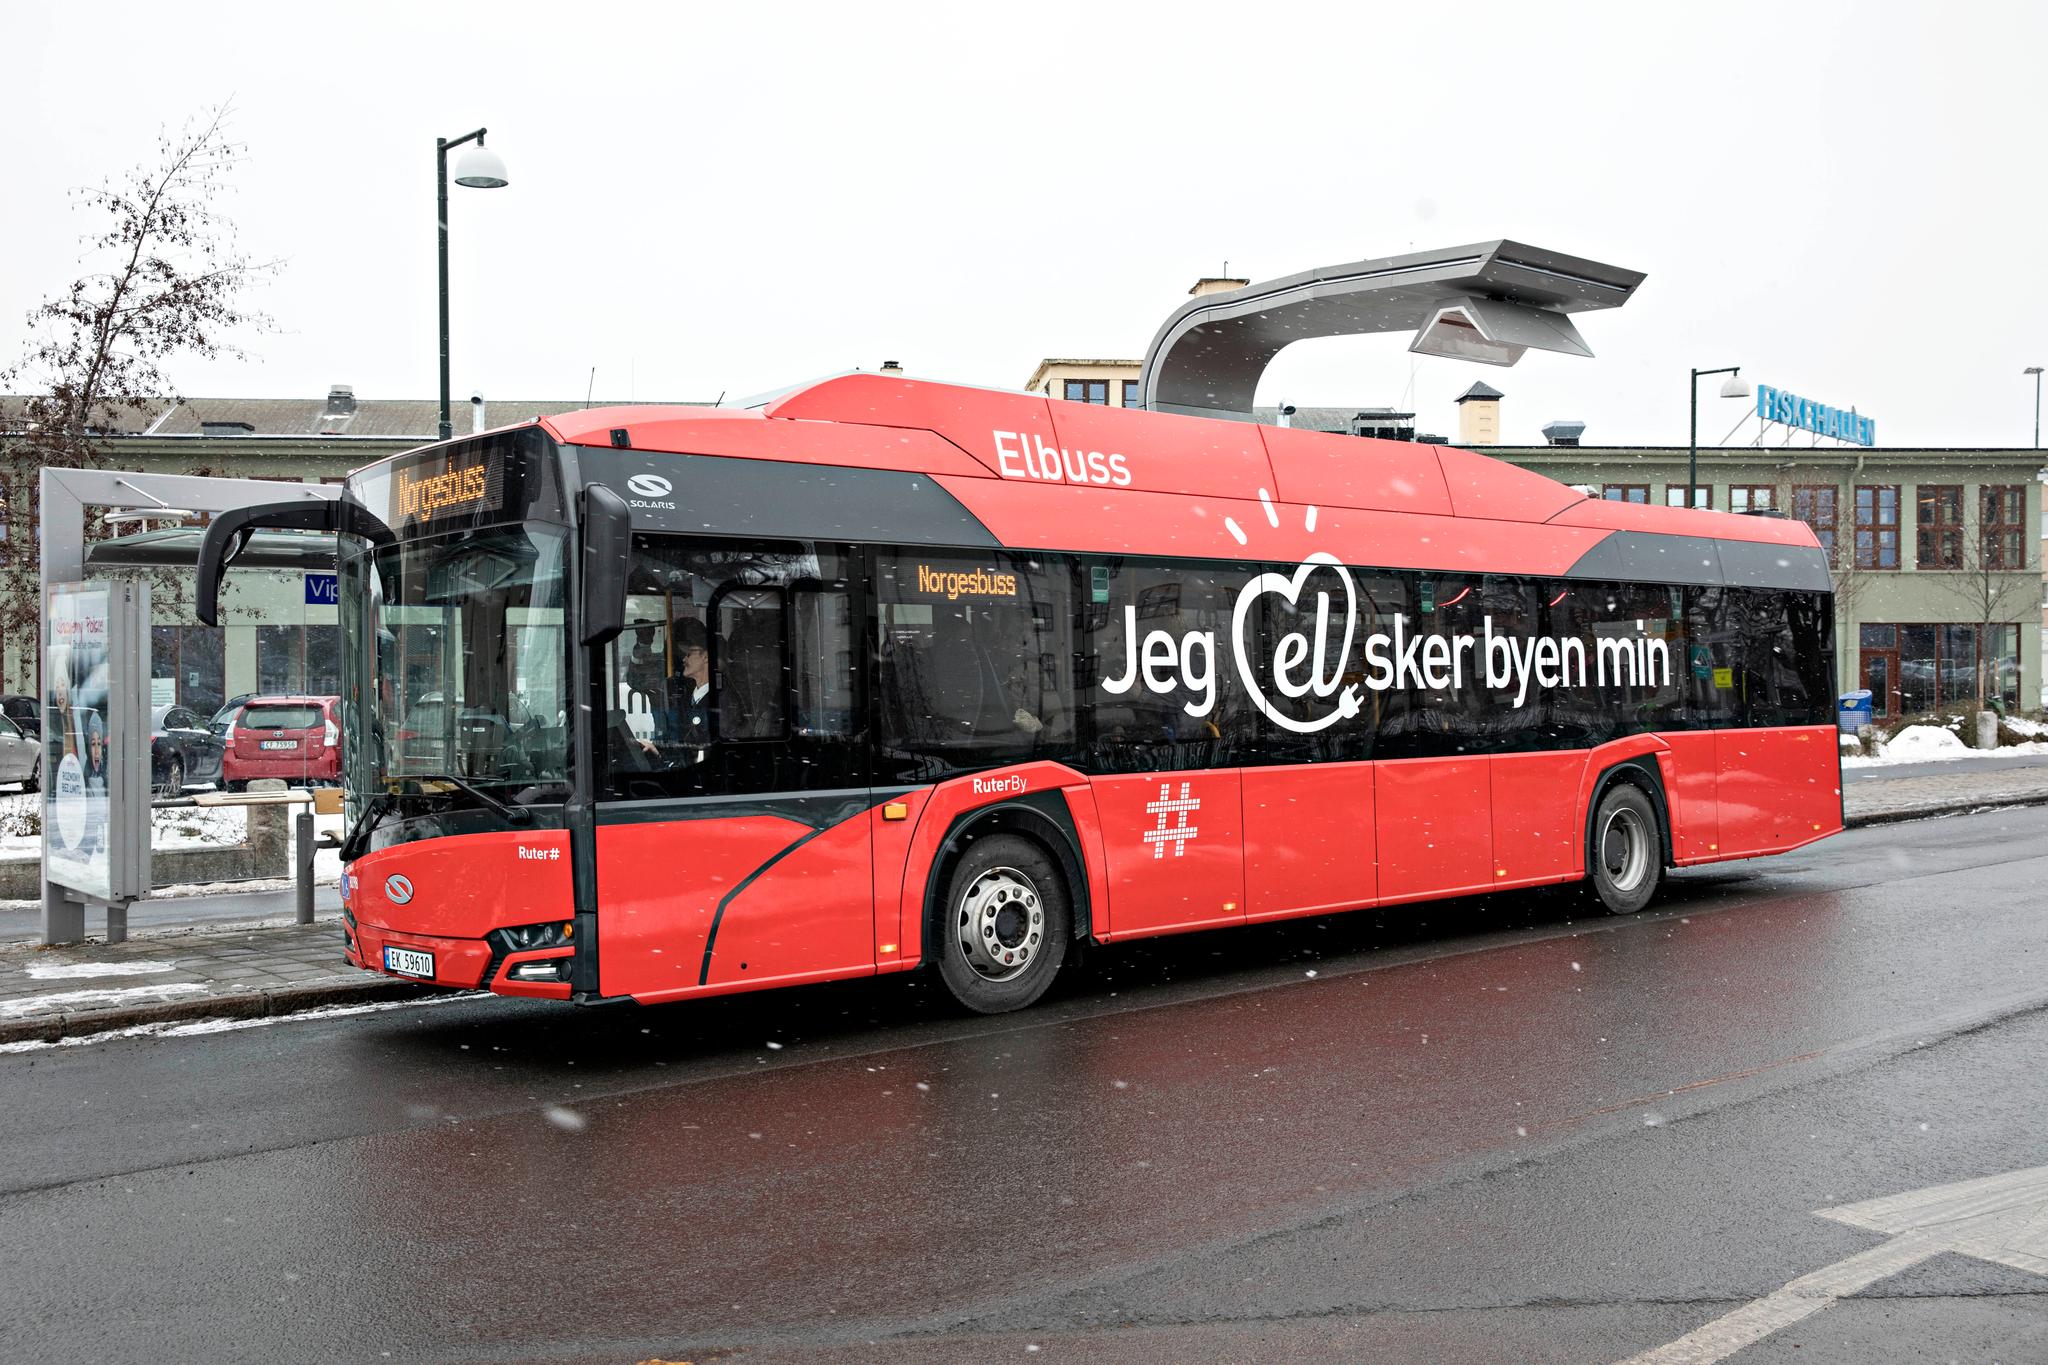 Dette er én av totalt seks elbusser som er under utprøving i Oslo i øyeblikket. De neste årene vil det trolig bli et vanlig syn i bybildet.